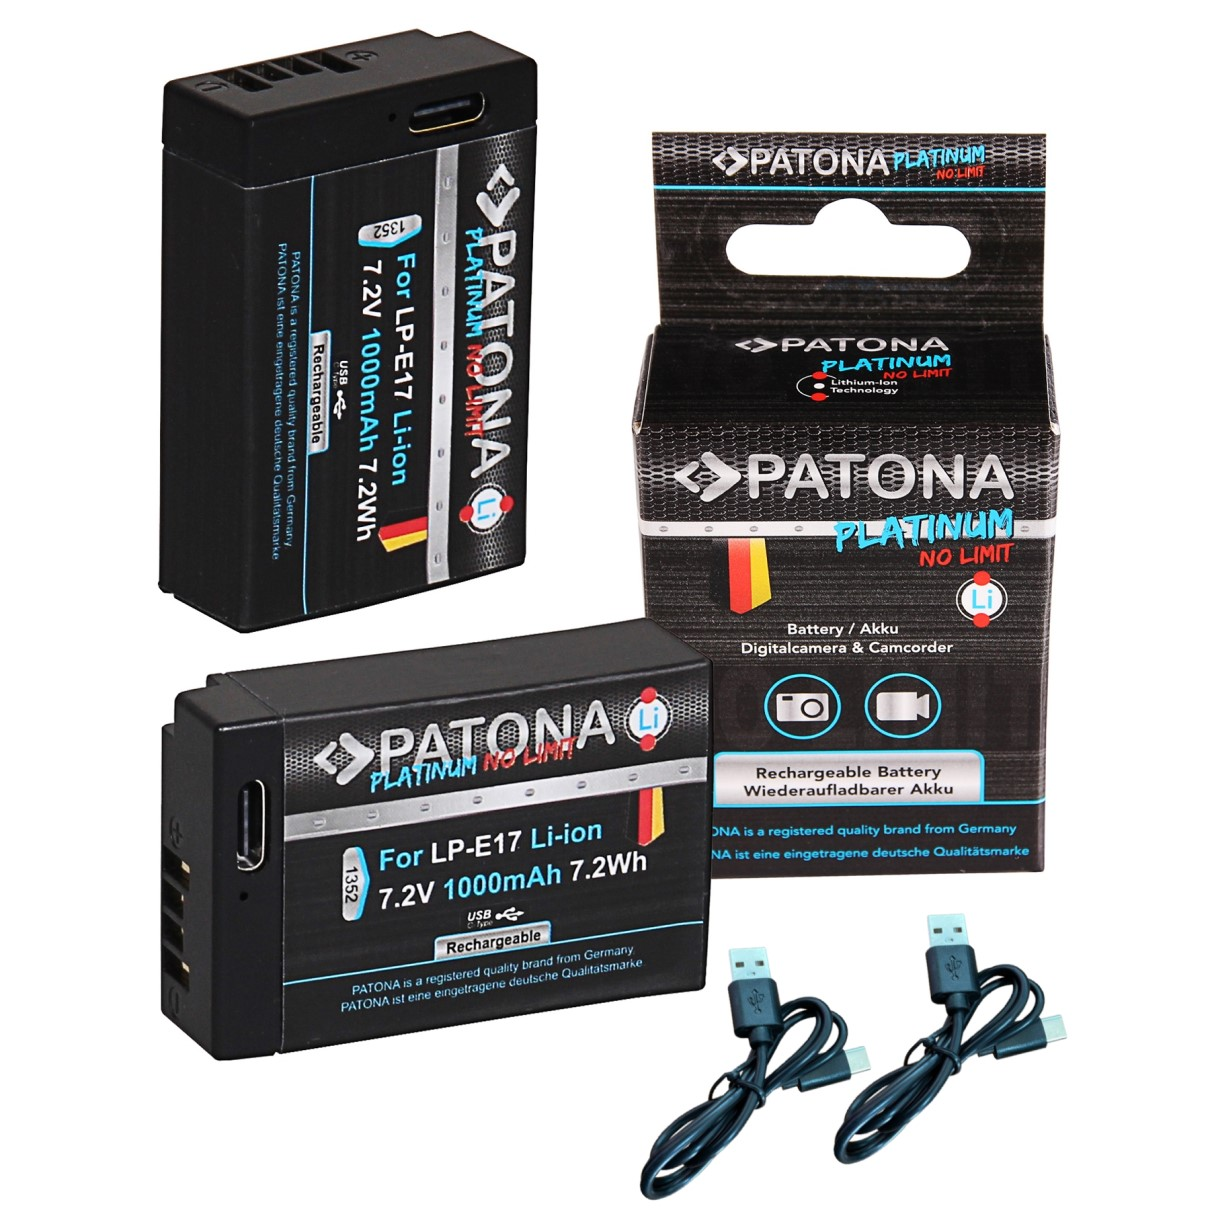 PATONA 2x LP-E17 Li-Ion 7.2 für Volt, 1000mAh  Platinum Akku Ersatzakku